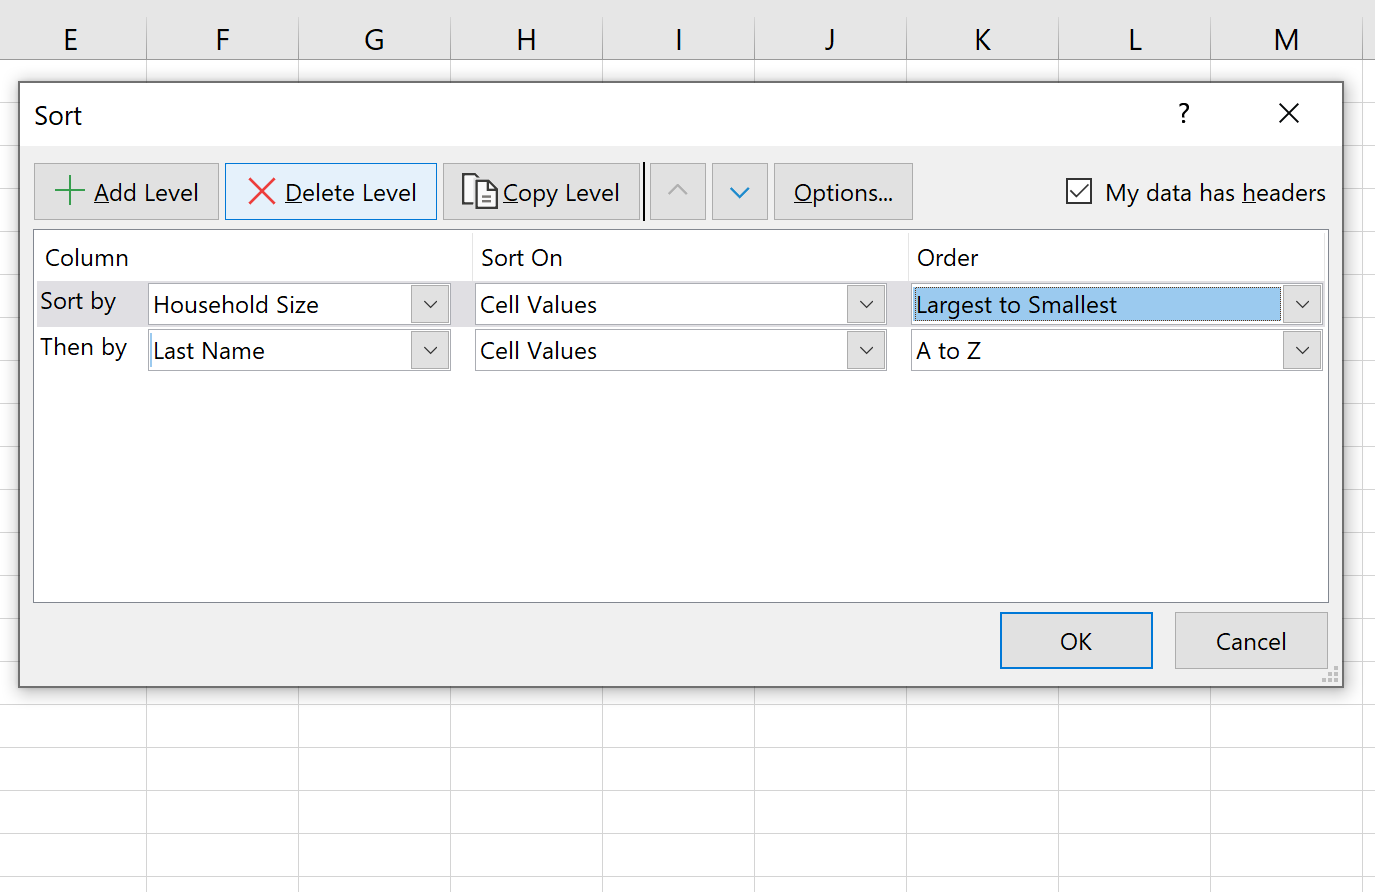 Classifique em várias colunas no Excel